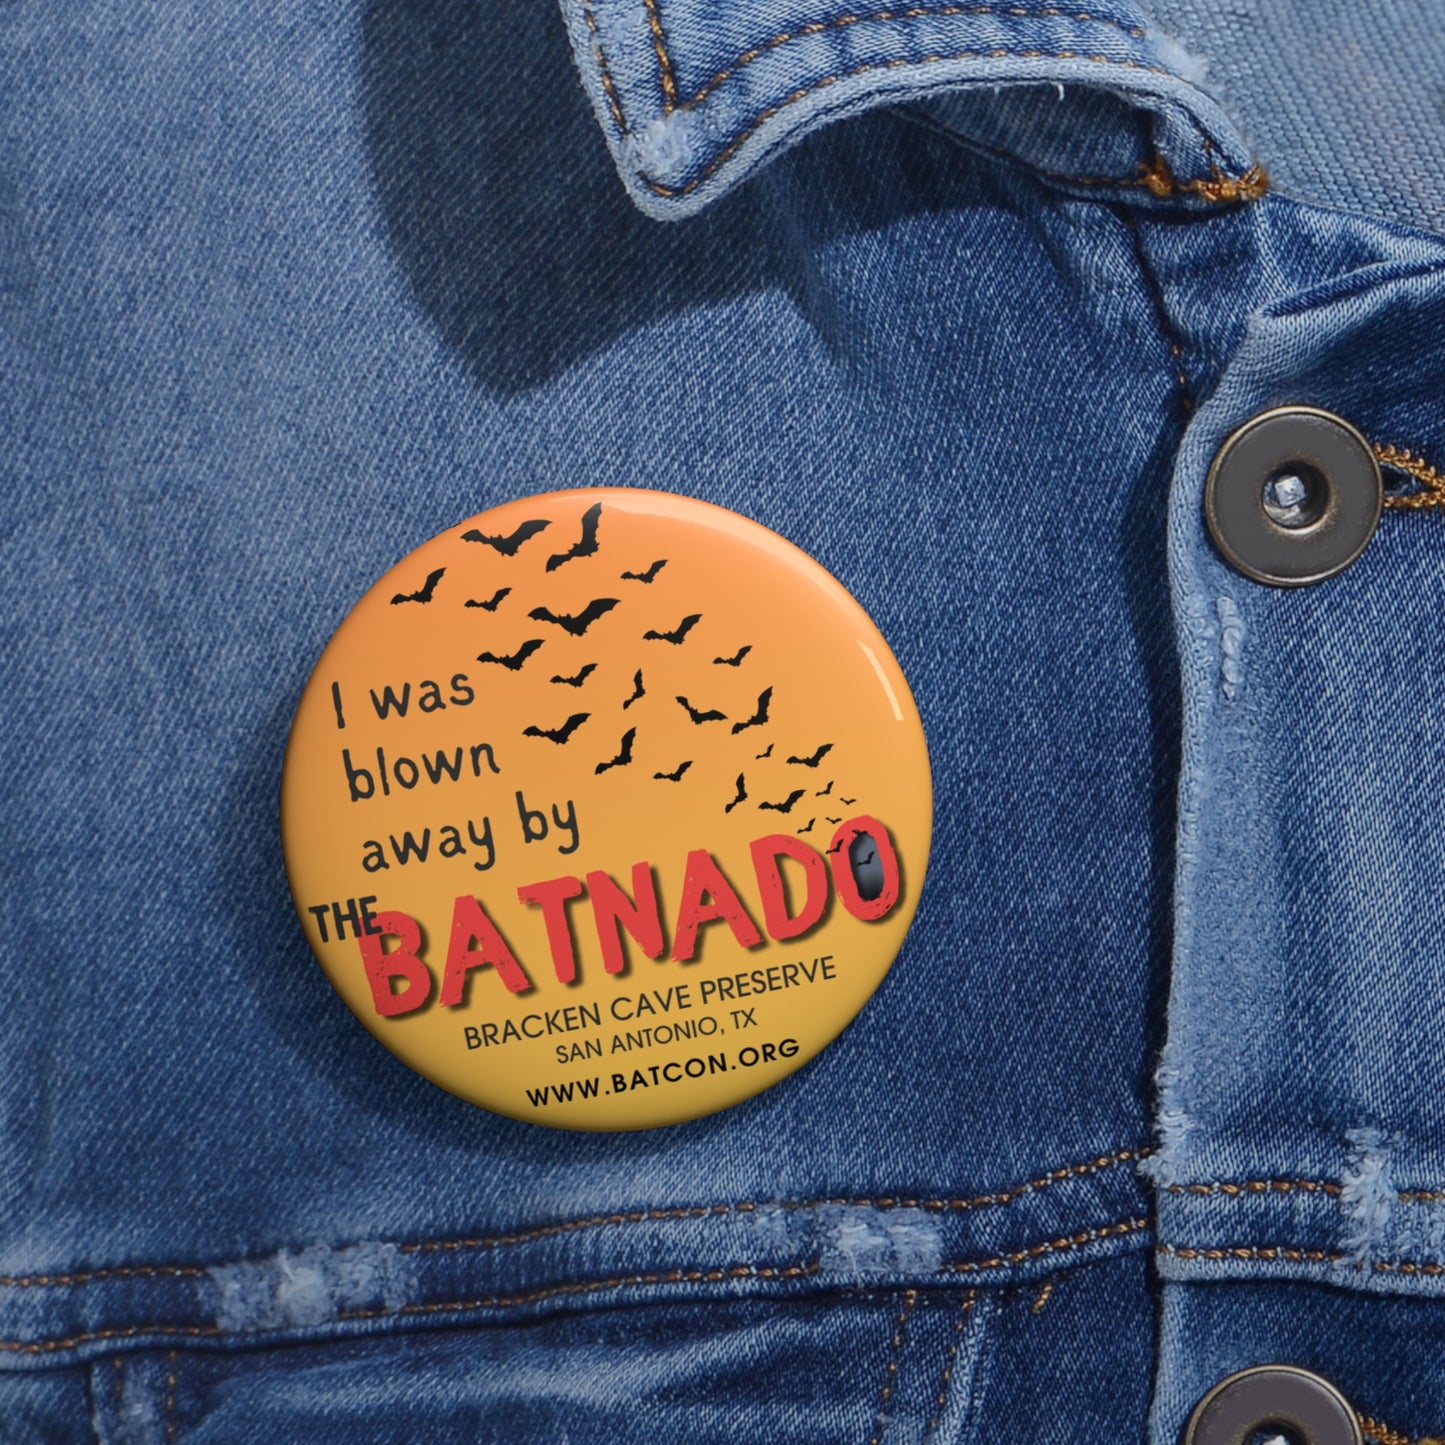 The Batnado - Pin Buttons